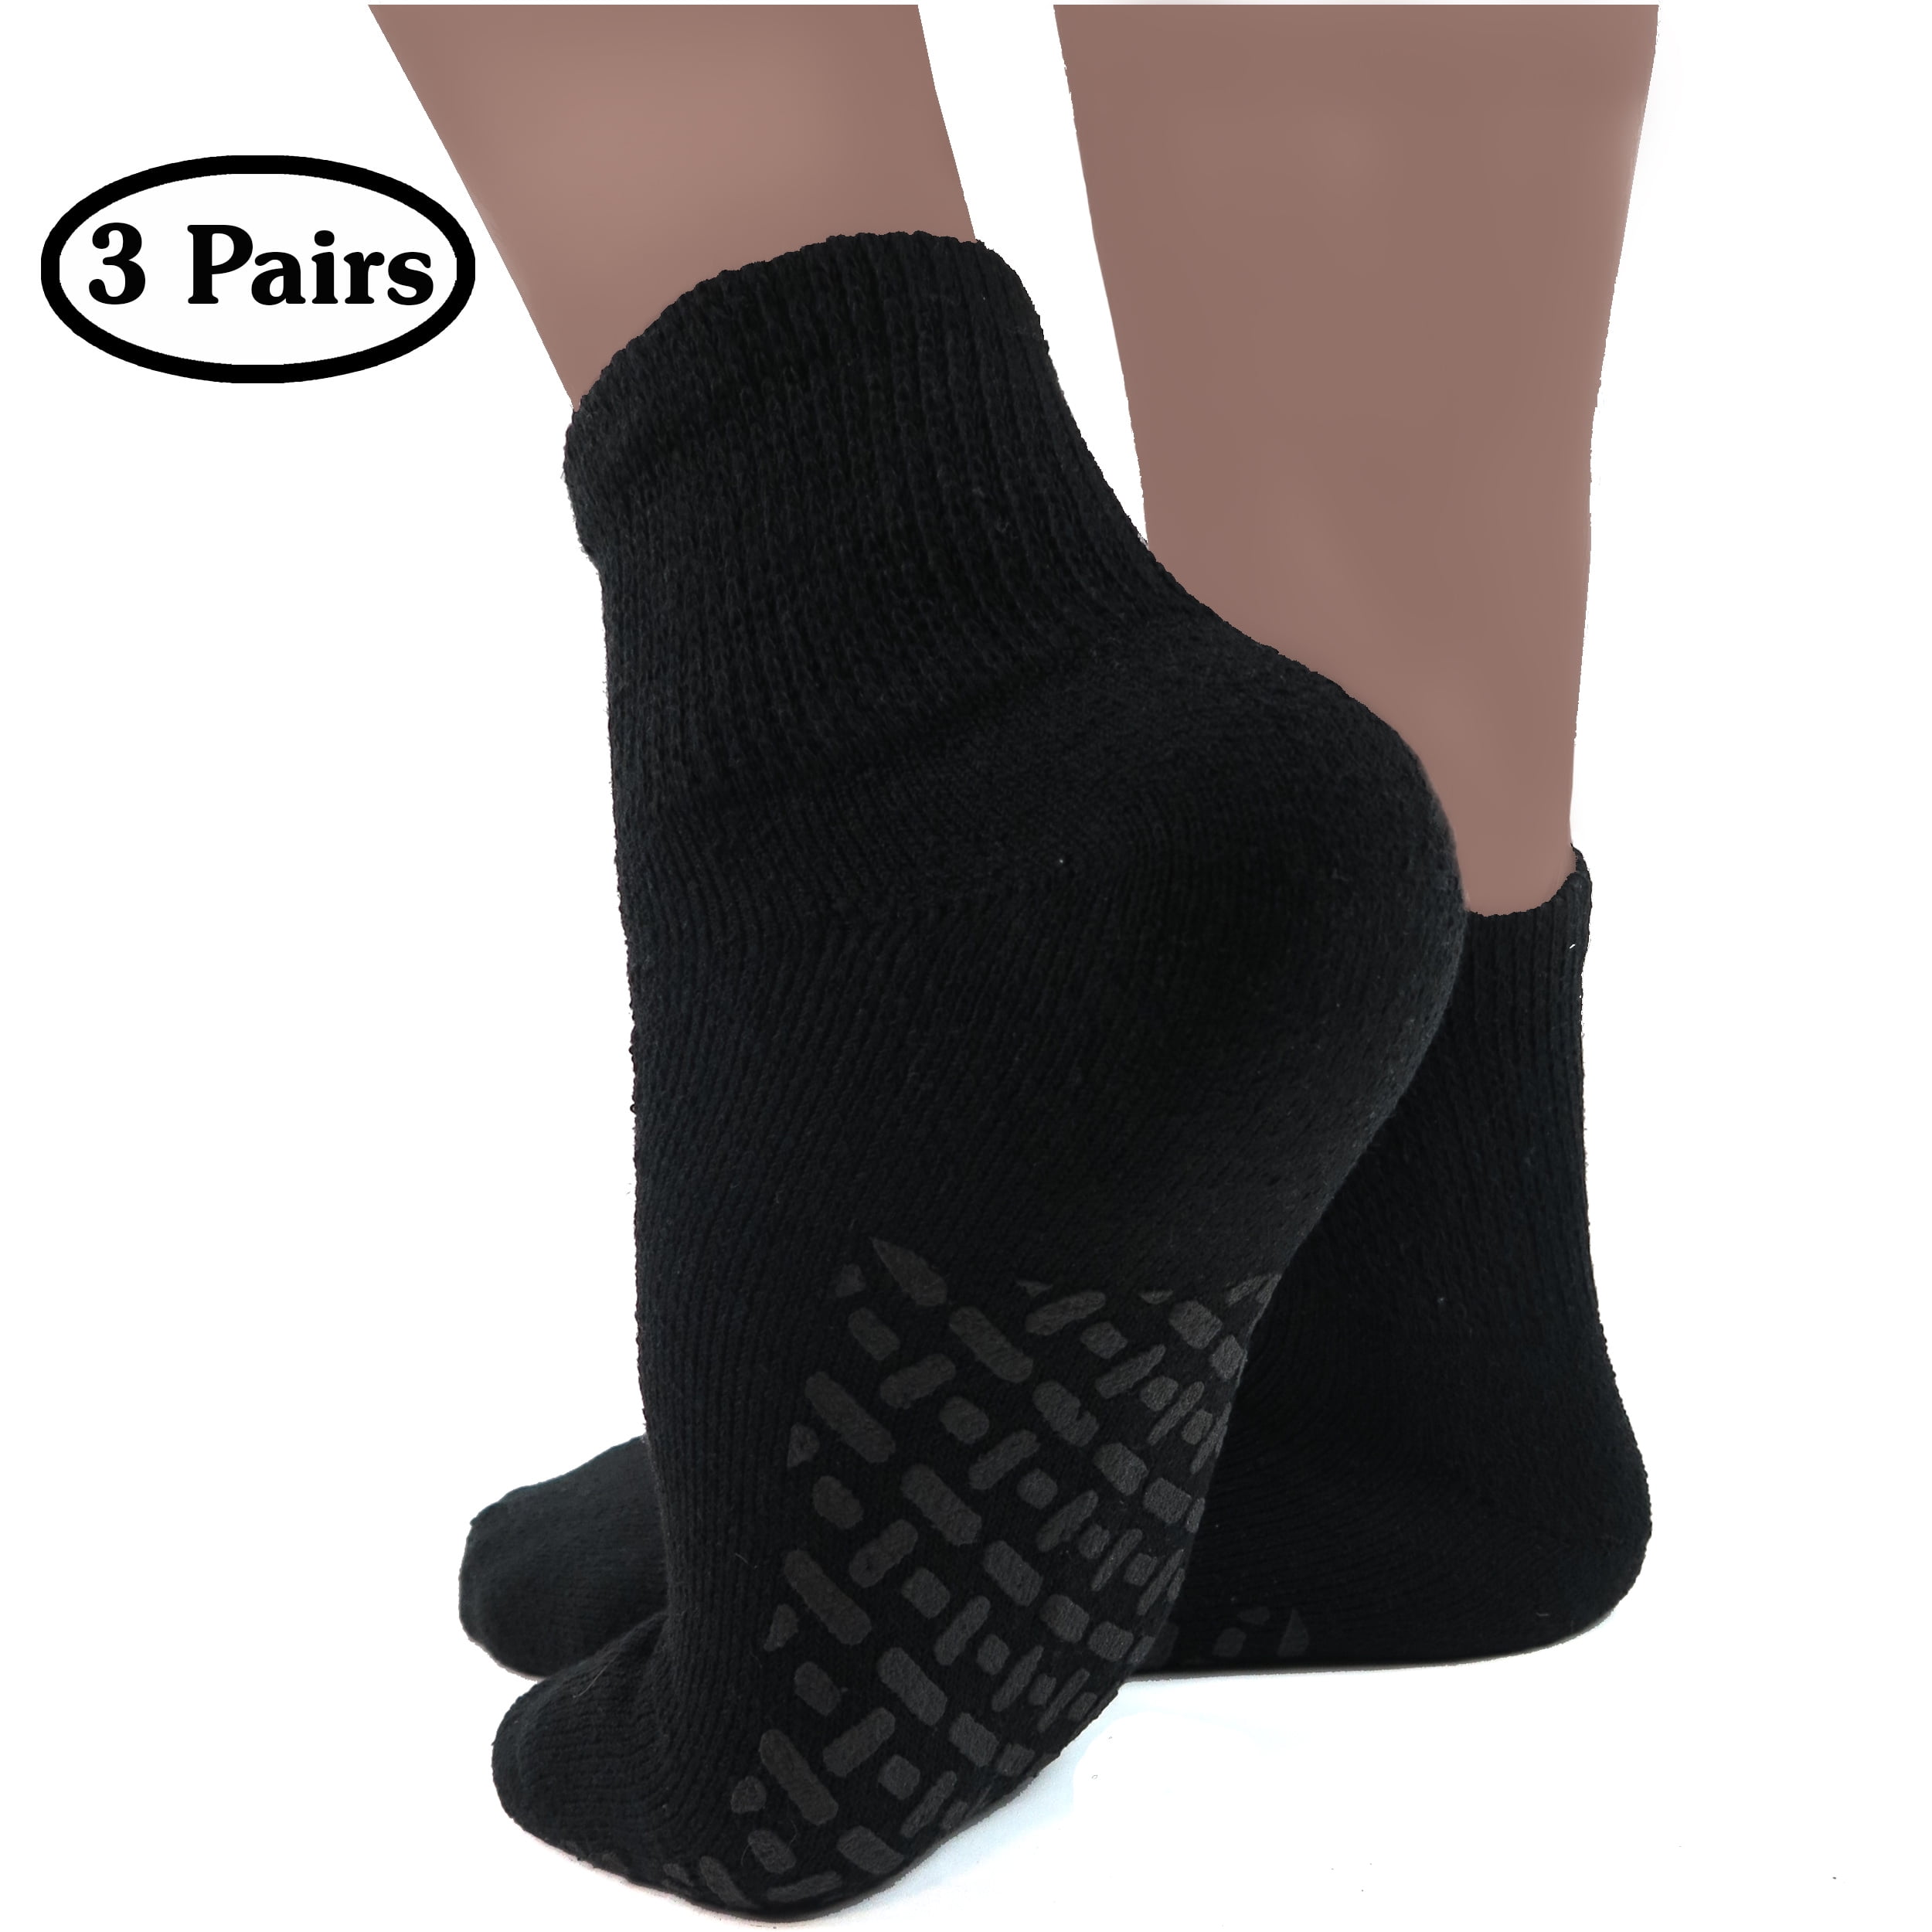 Non-Slip Diabetic Socks 